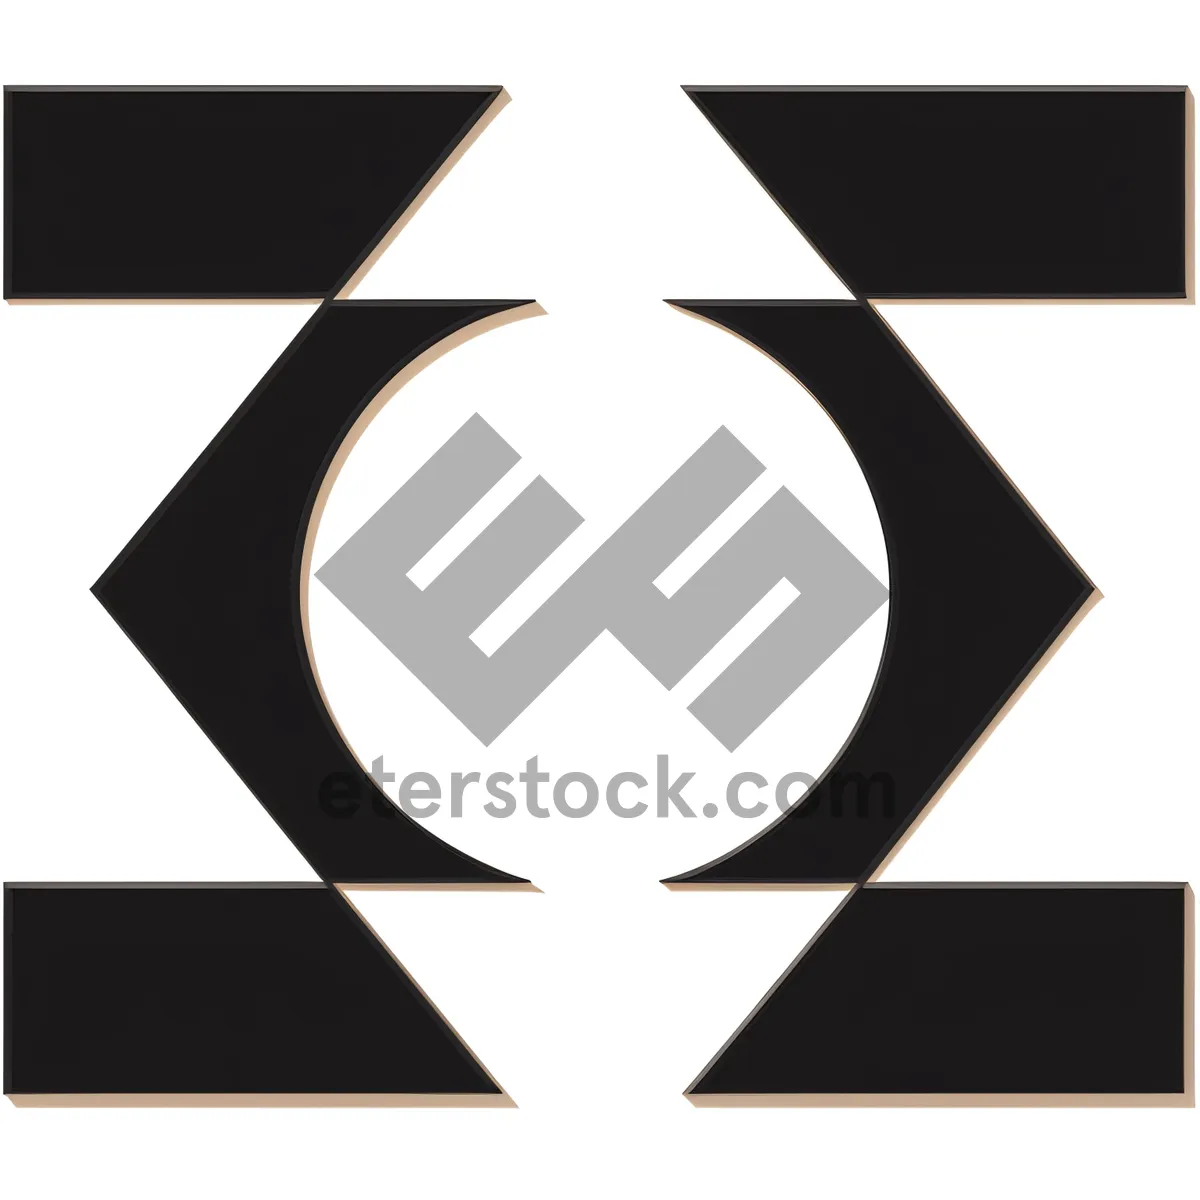 Picture of Heraldic Symbolic Design - Decorative Graphic Element